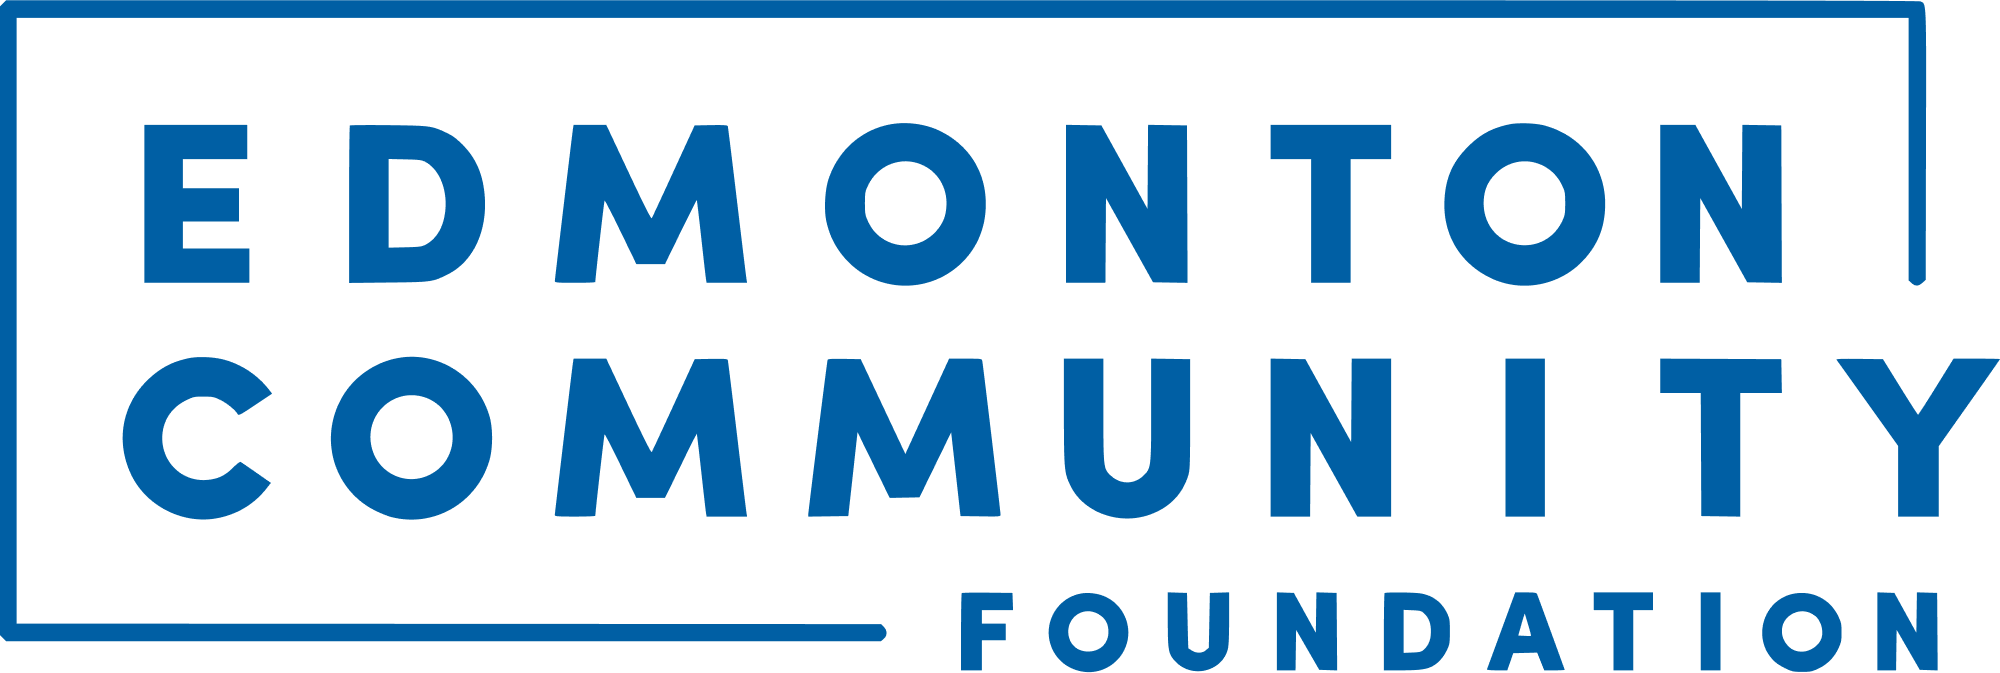 Edmonton Community Foundation logo on transparent background